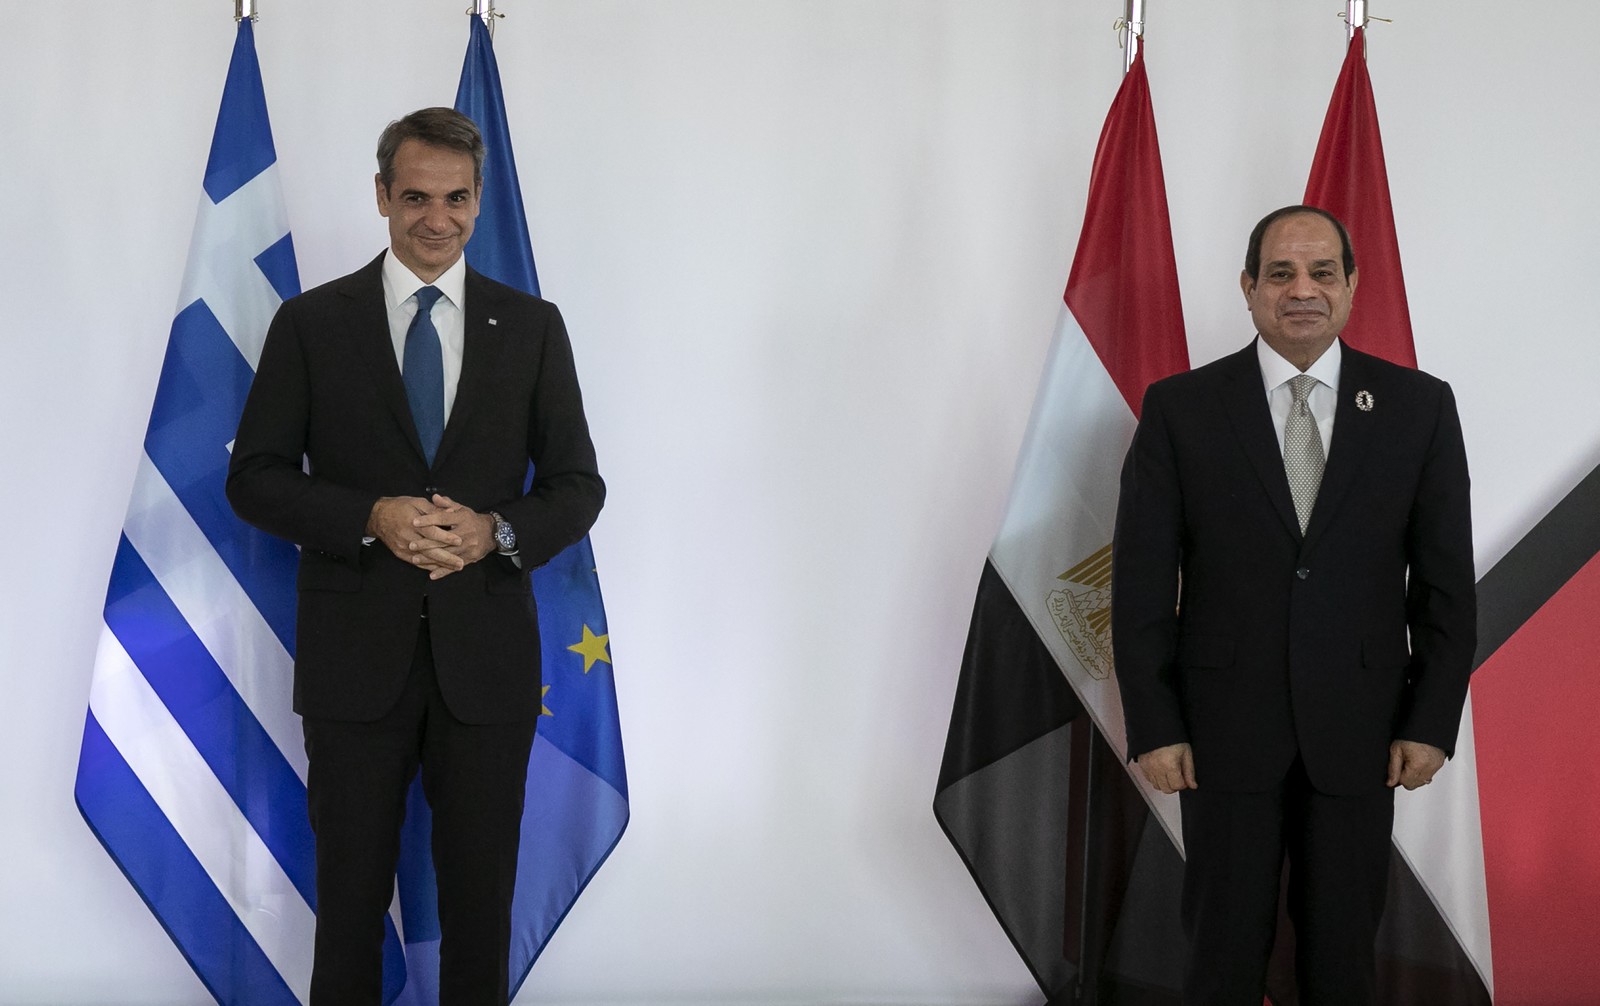 Ελλάς – Αίγυπτος – συμμαχία ξανά, με το βλέμμα στην Τουρκία